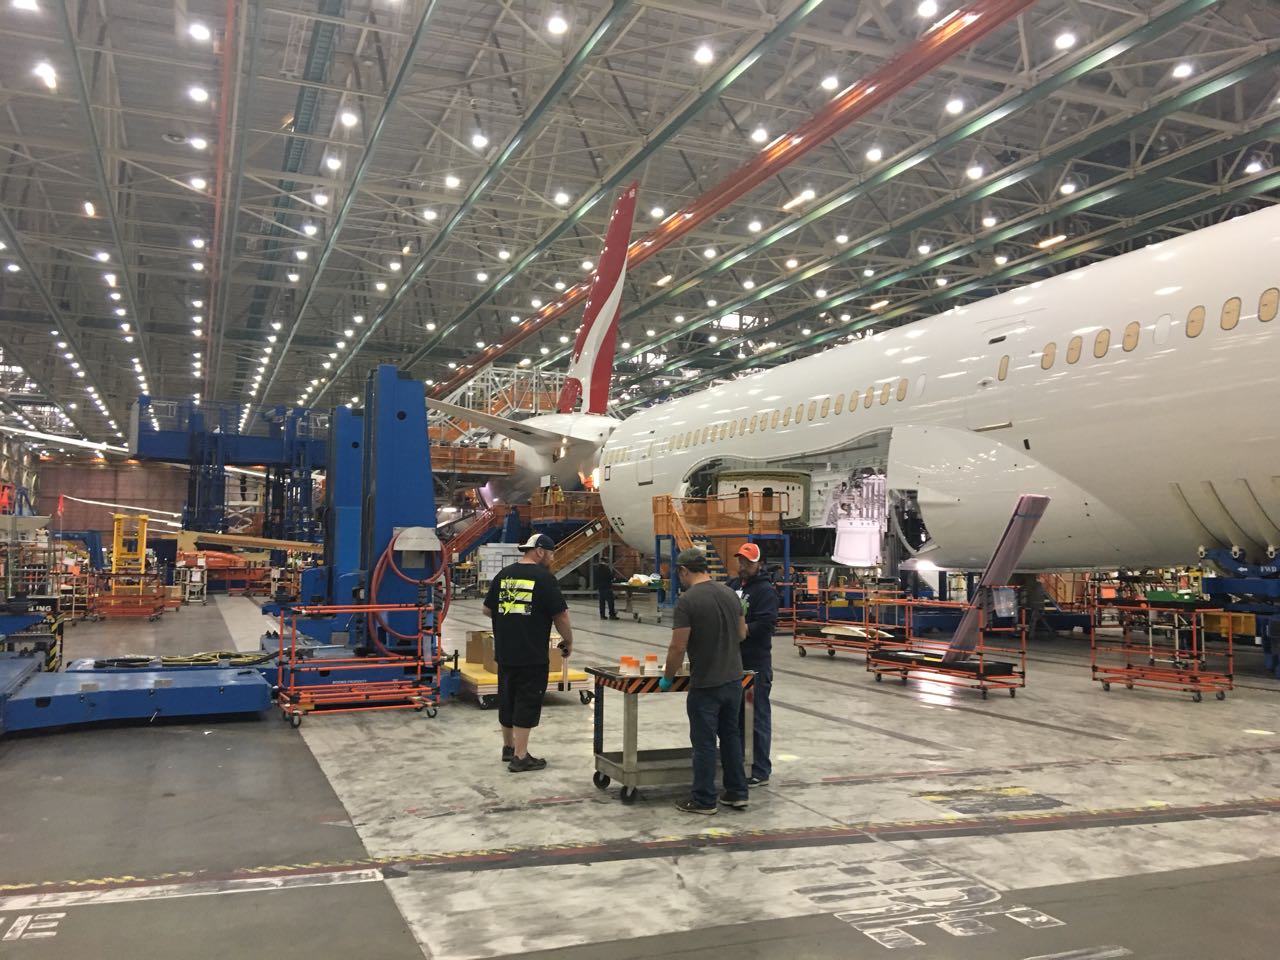   طائرة الأحلام الأمريكية طراز بوينج 787  تنضم لأسطول مصر للطيران